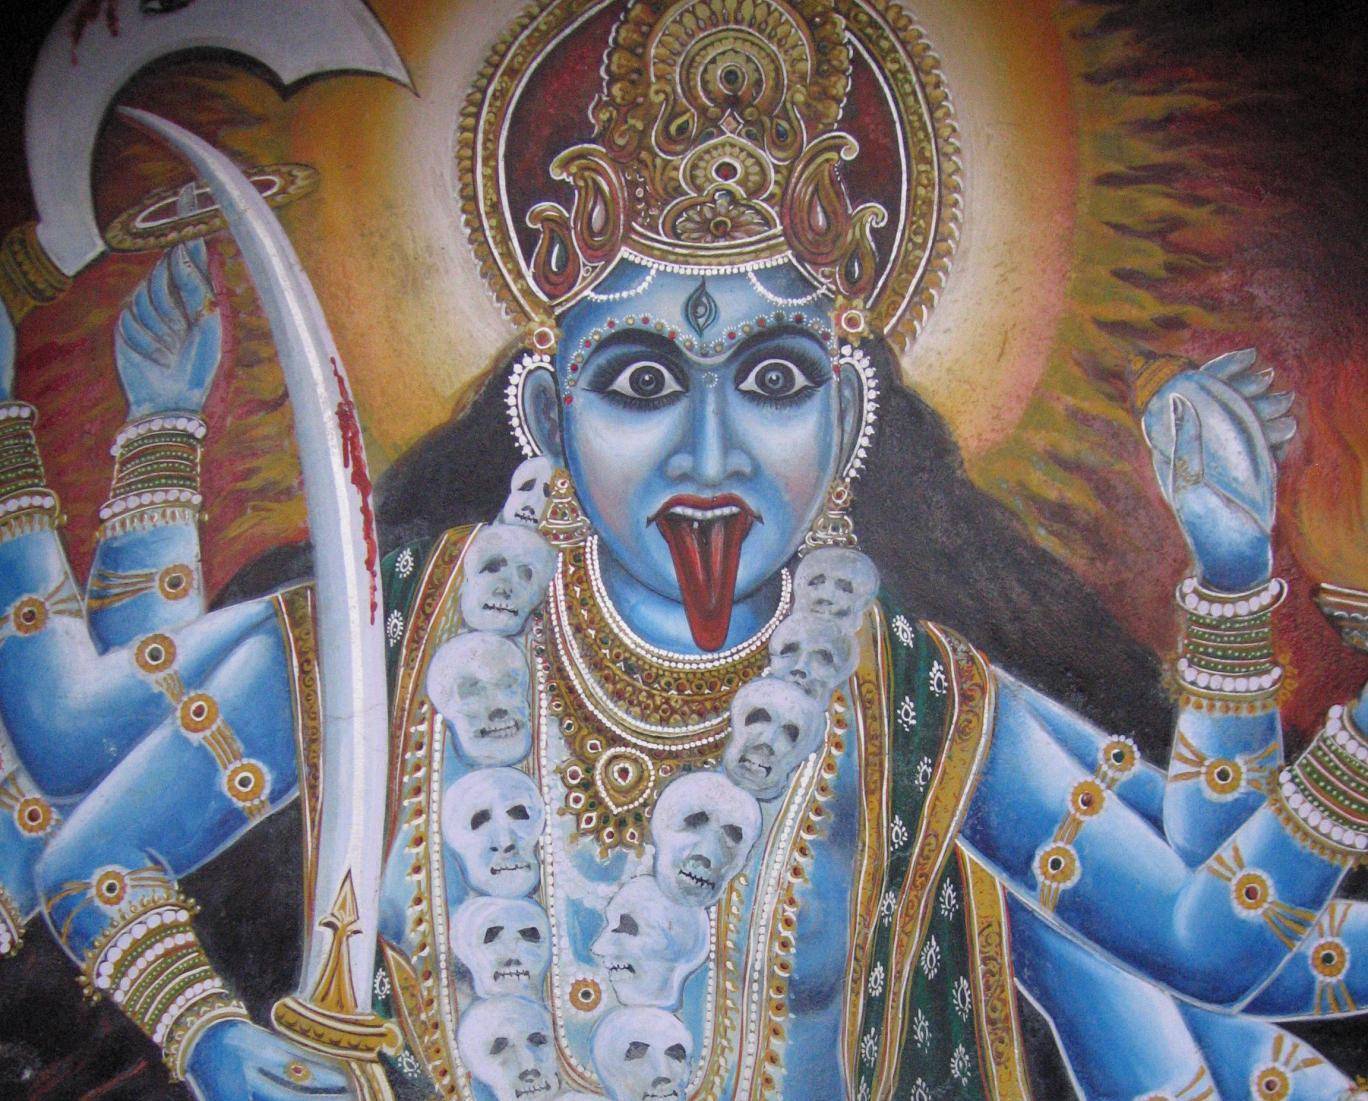 Богиня сарасвати: изображение, описание и мантры